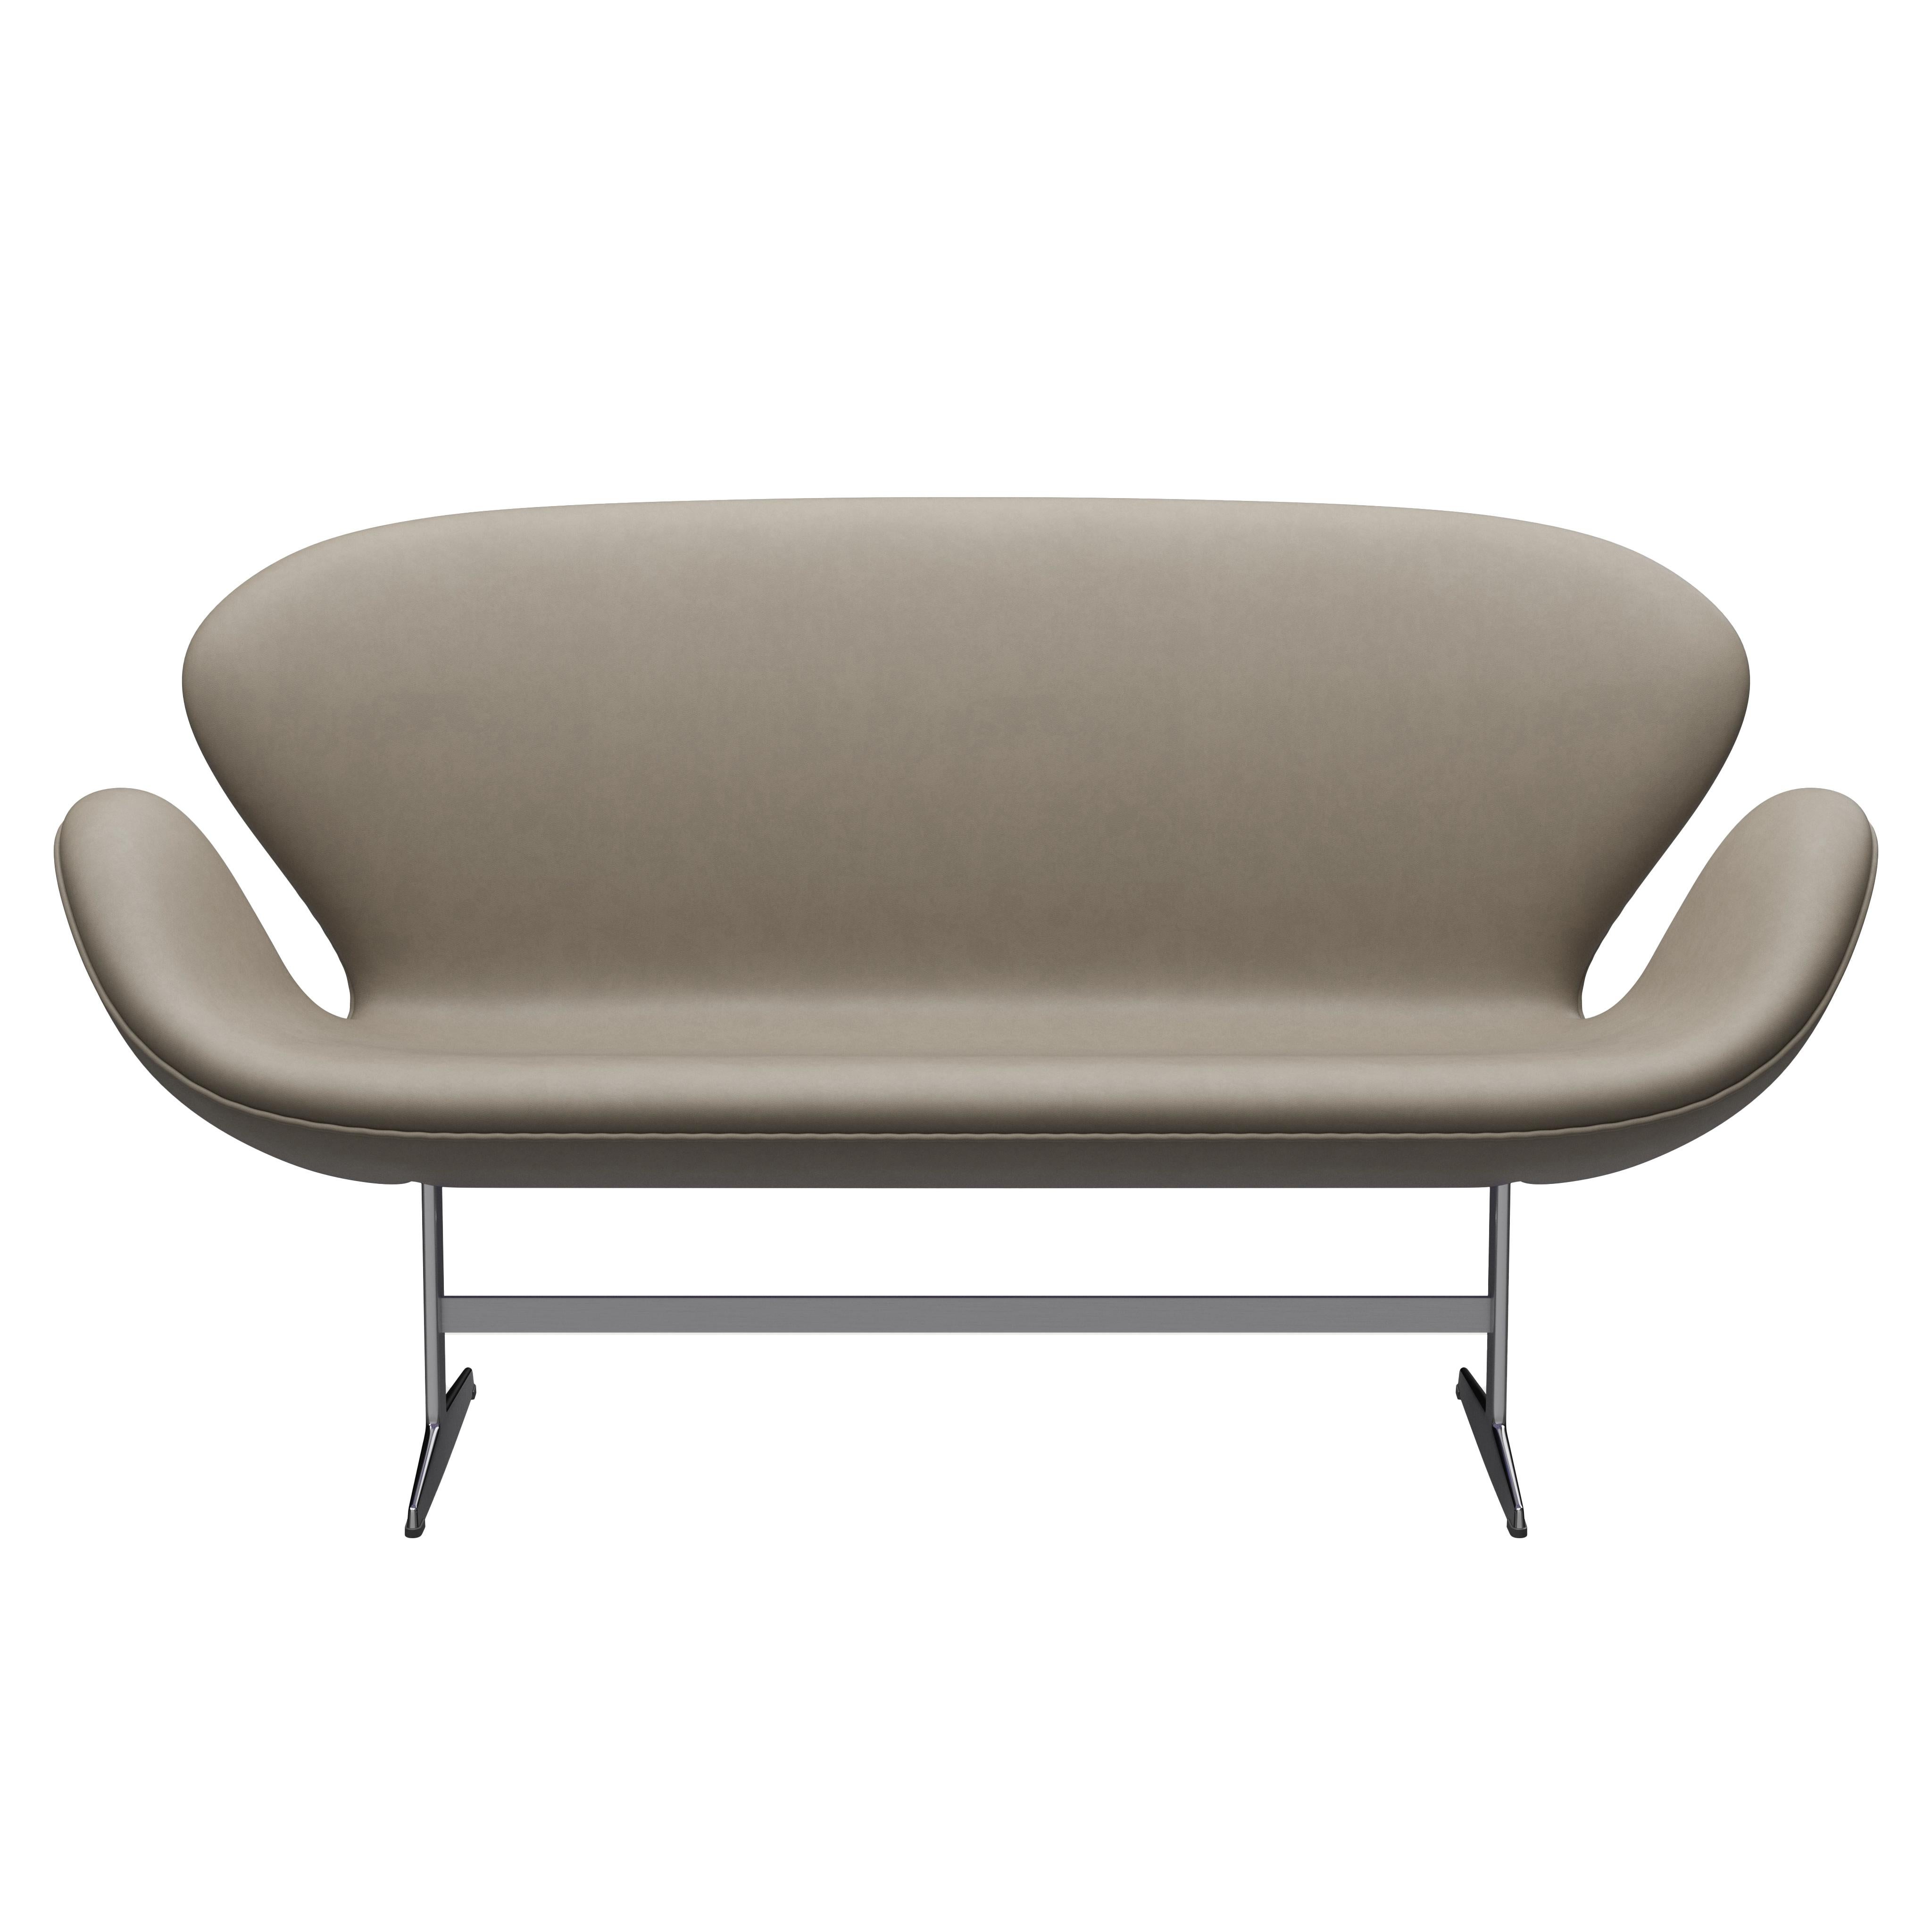 Arne Jacobsen 'Swan' Sofa for Fritz Hansen in Leather Upholstery (Cat. 3) For Sale 3